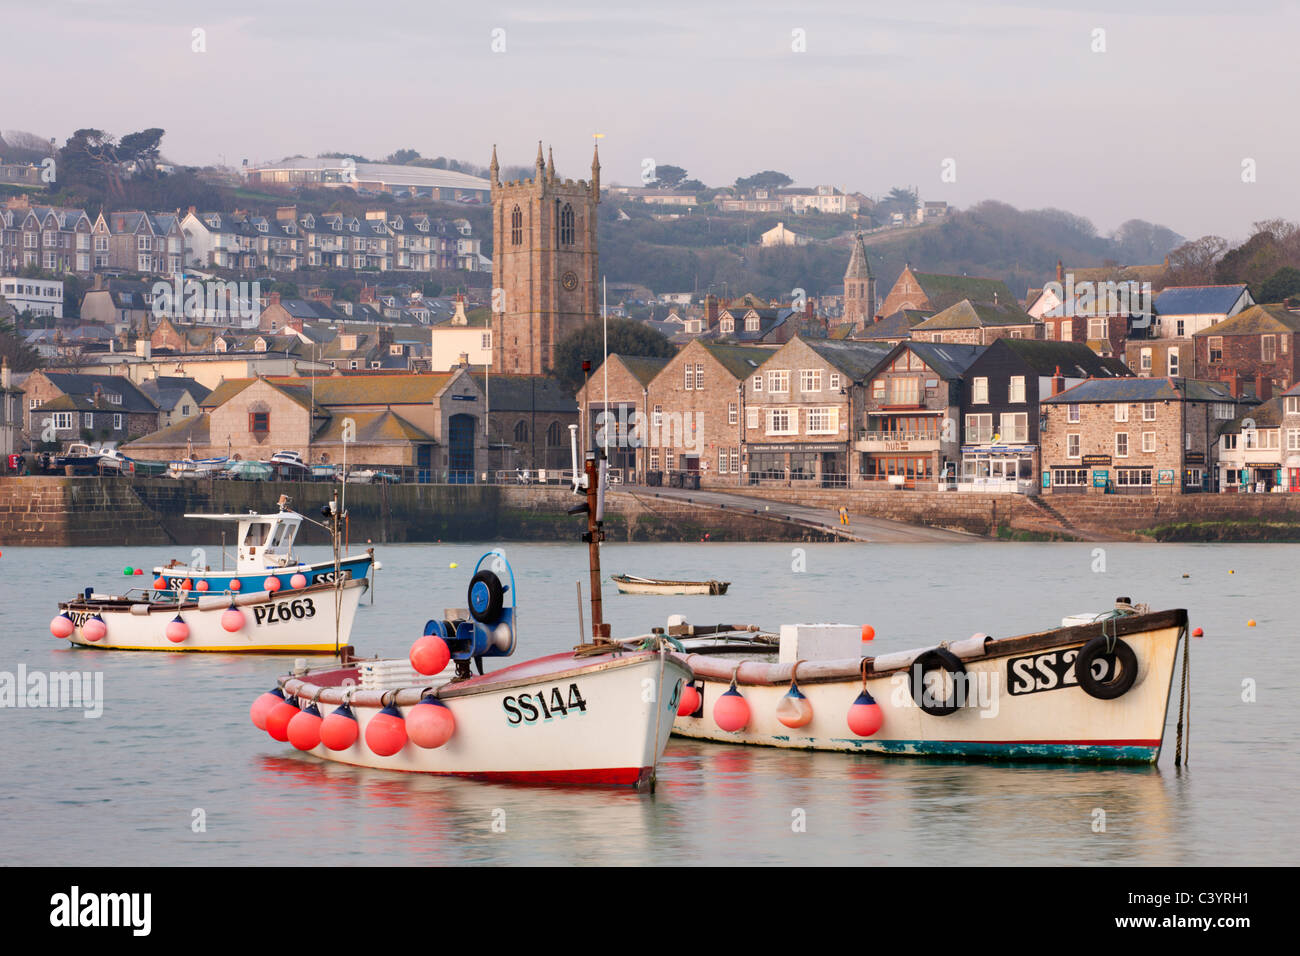 Angelboote/Fischerboote, Geschäfte, Häuser und Kirche blicken auf den malerischen Hafen von St. Ives, Cornwall, England. Frühling 2011 (März). Stockfoto